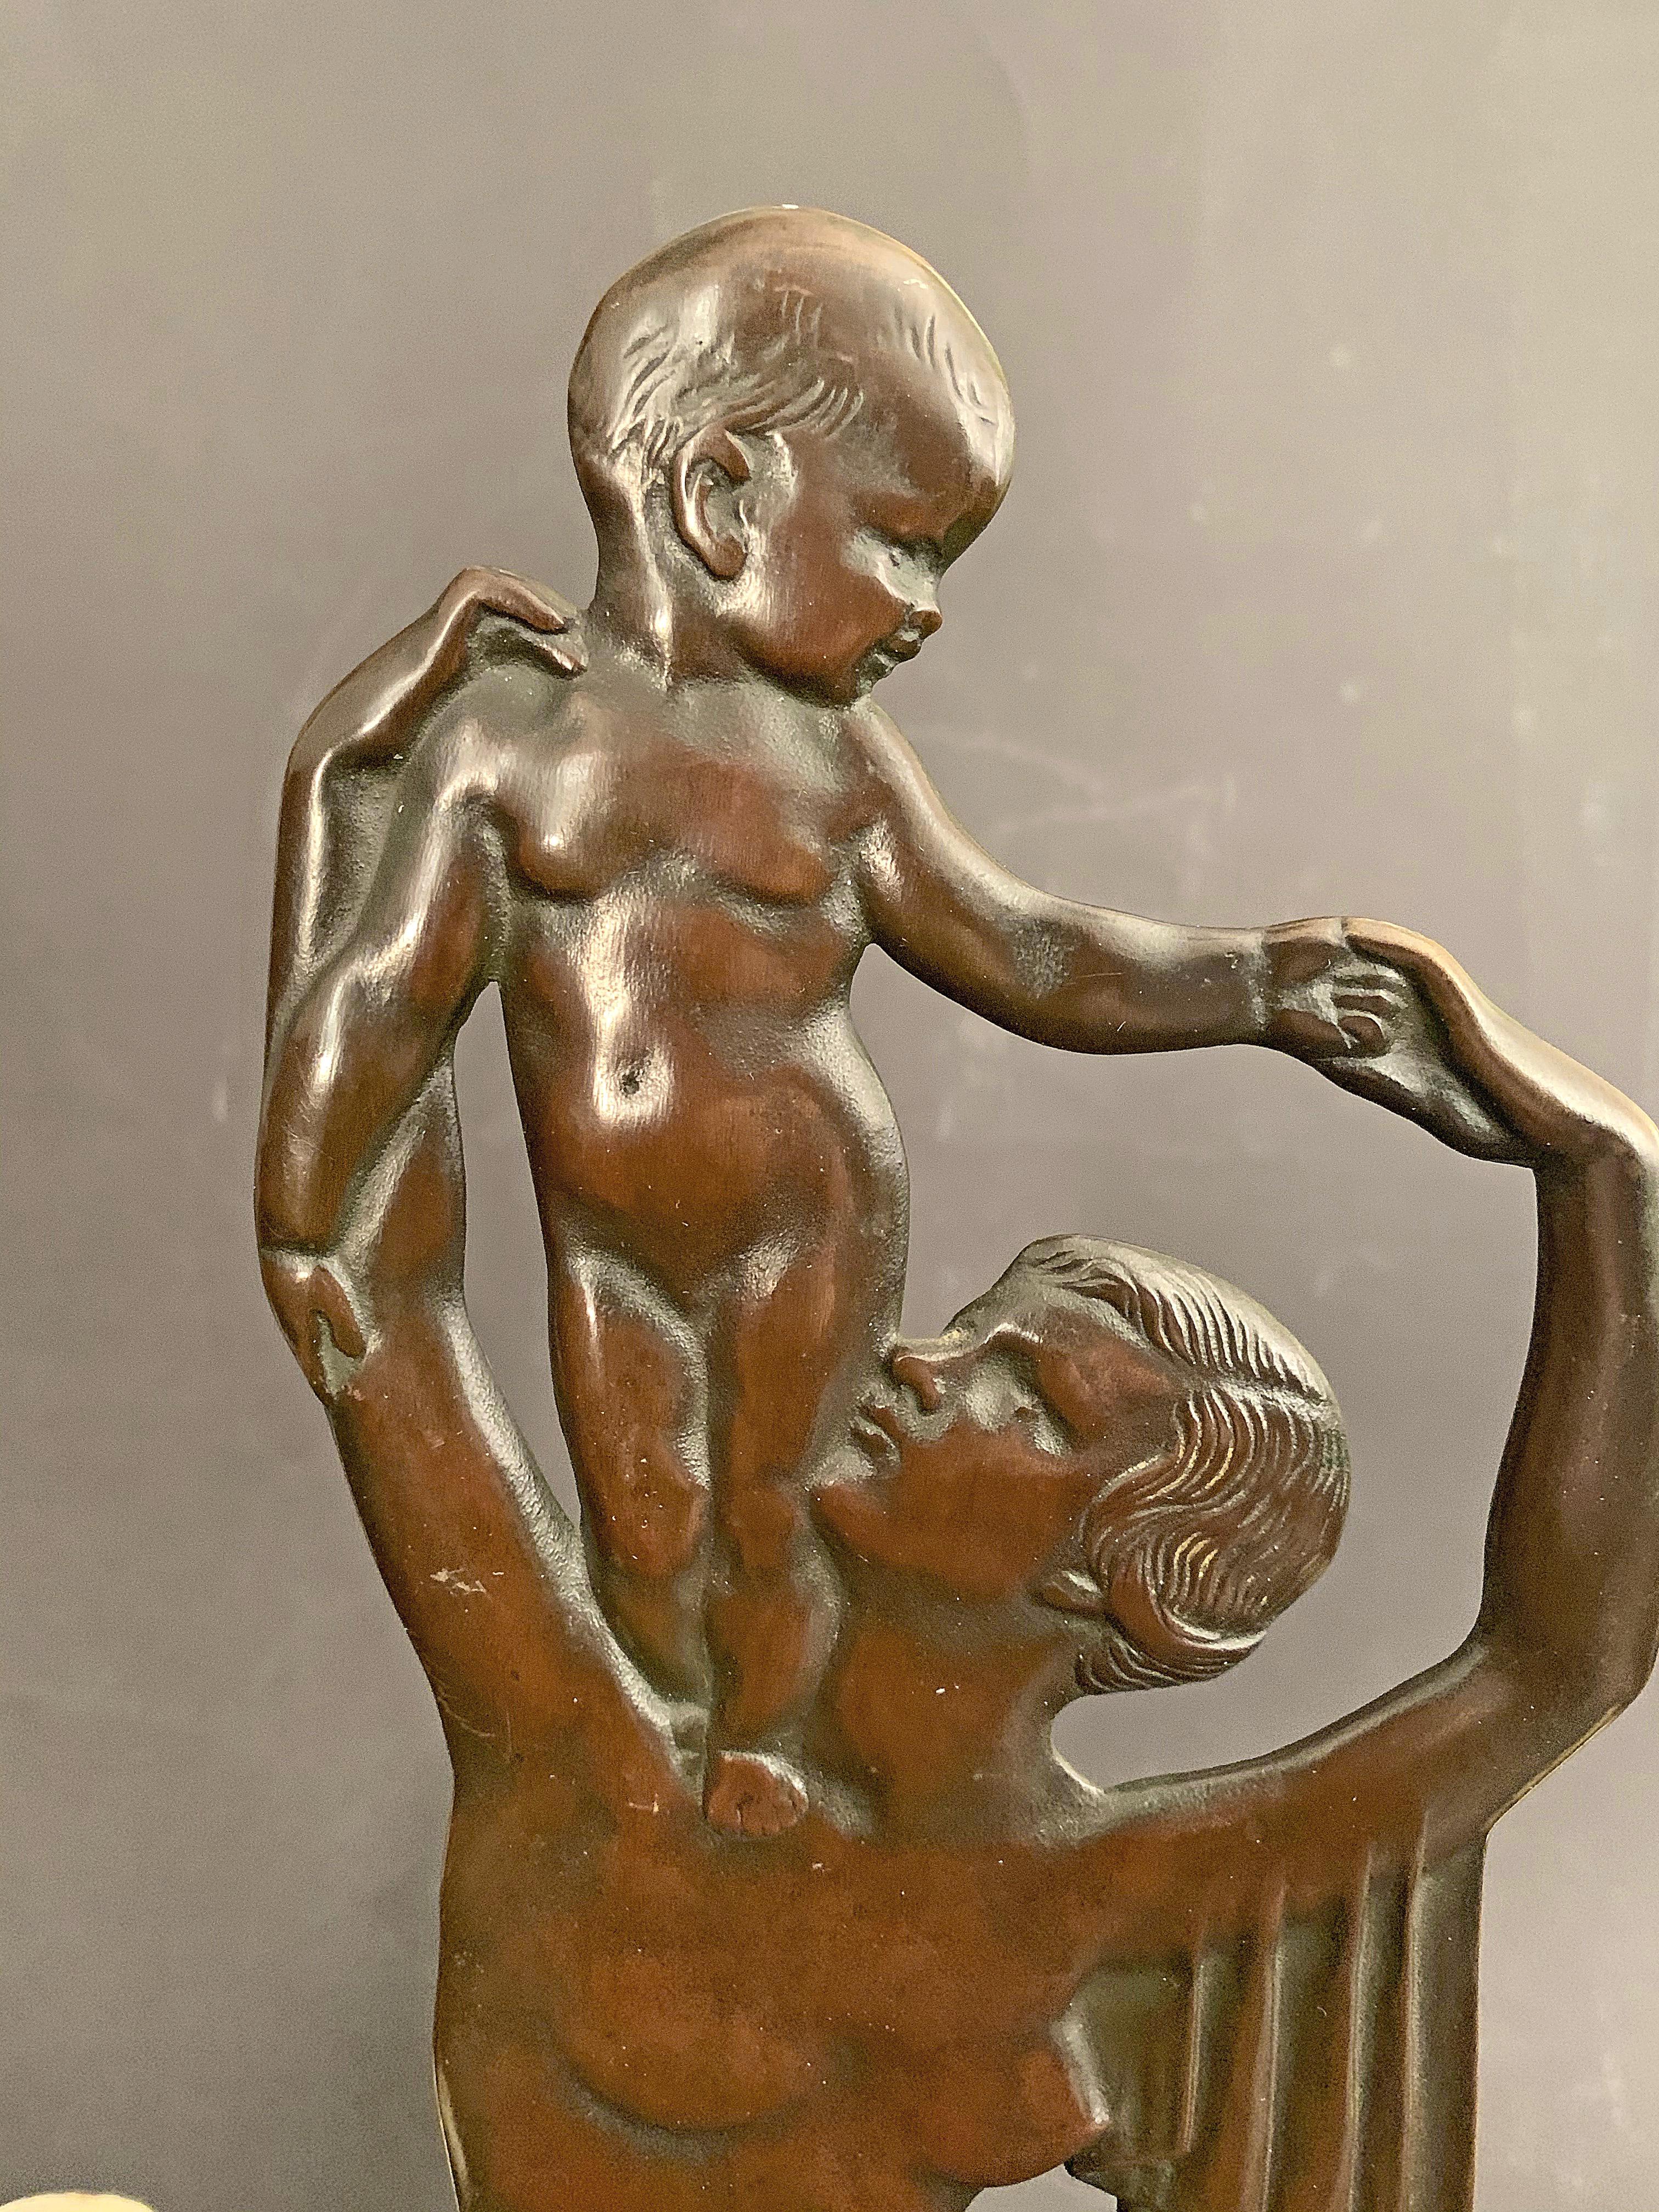 Diese äußerst seltene Bronzeskulptur ist eine der schönsten, die wir je angeboten haben. Sie zeigt eine Mutter mit ihrem Kind, das auf ihrer Schulter steht, wobei jede Figur wunderschön modelliert und ausgeführt ist. Die Skulptur wird von vier